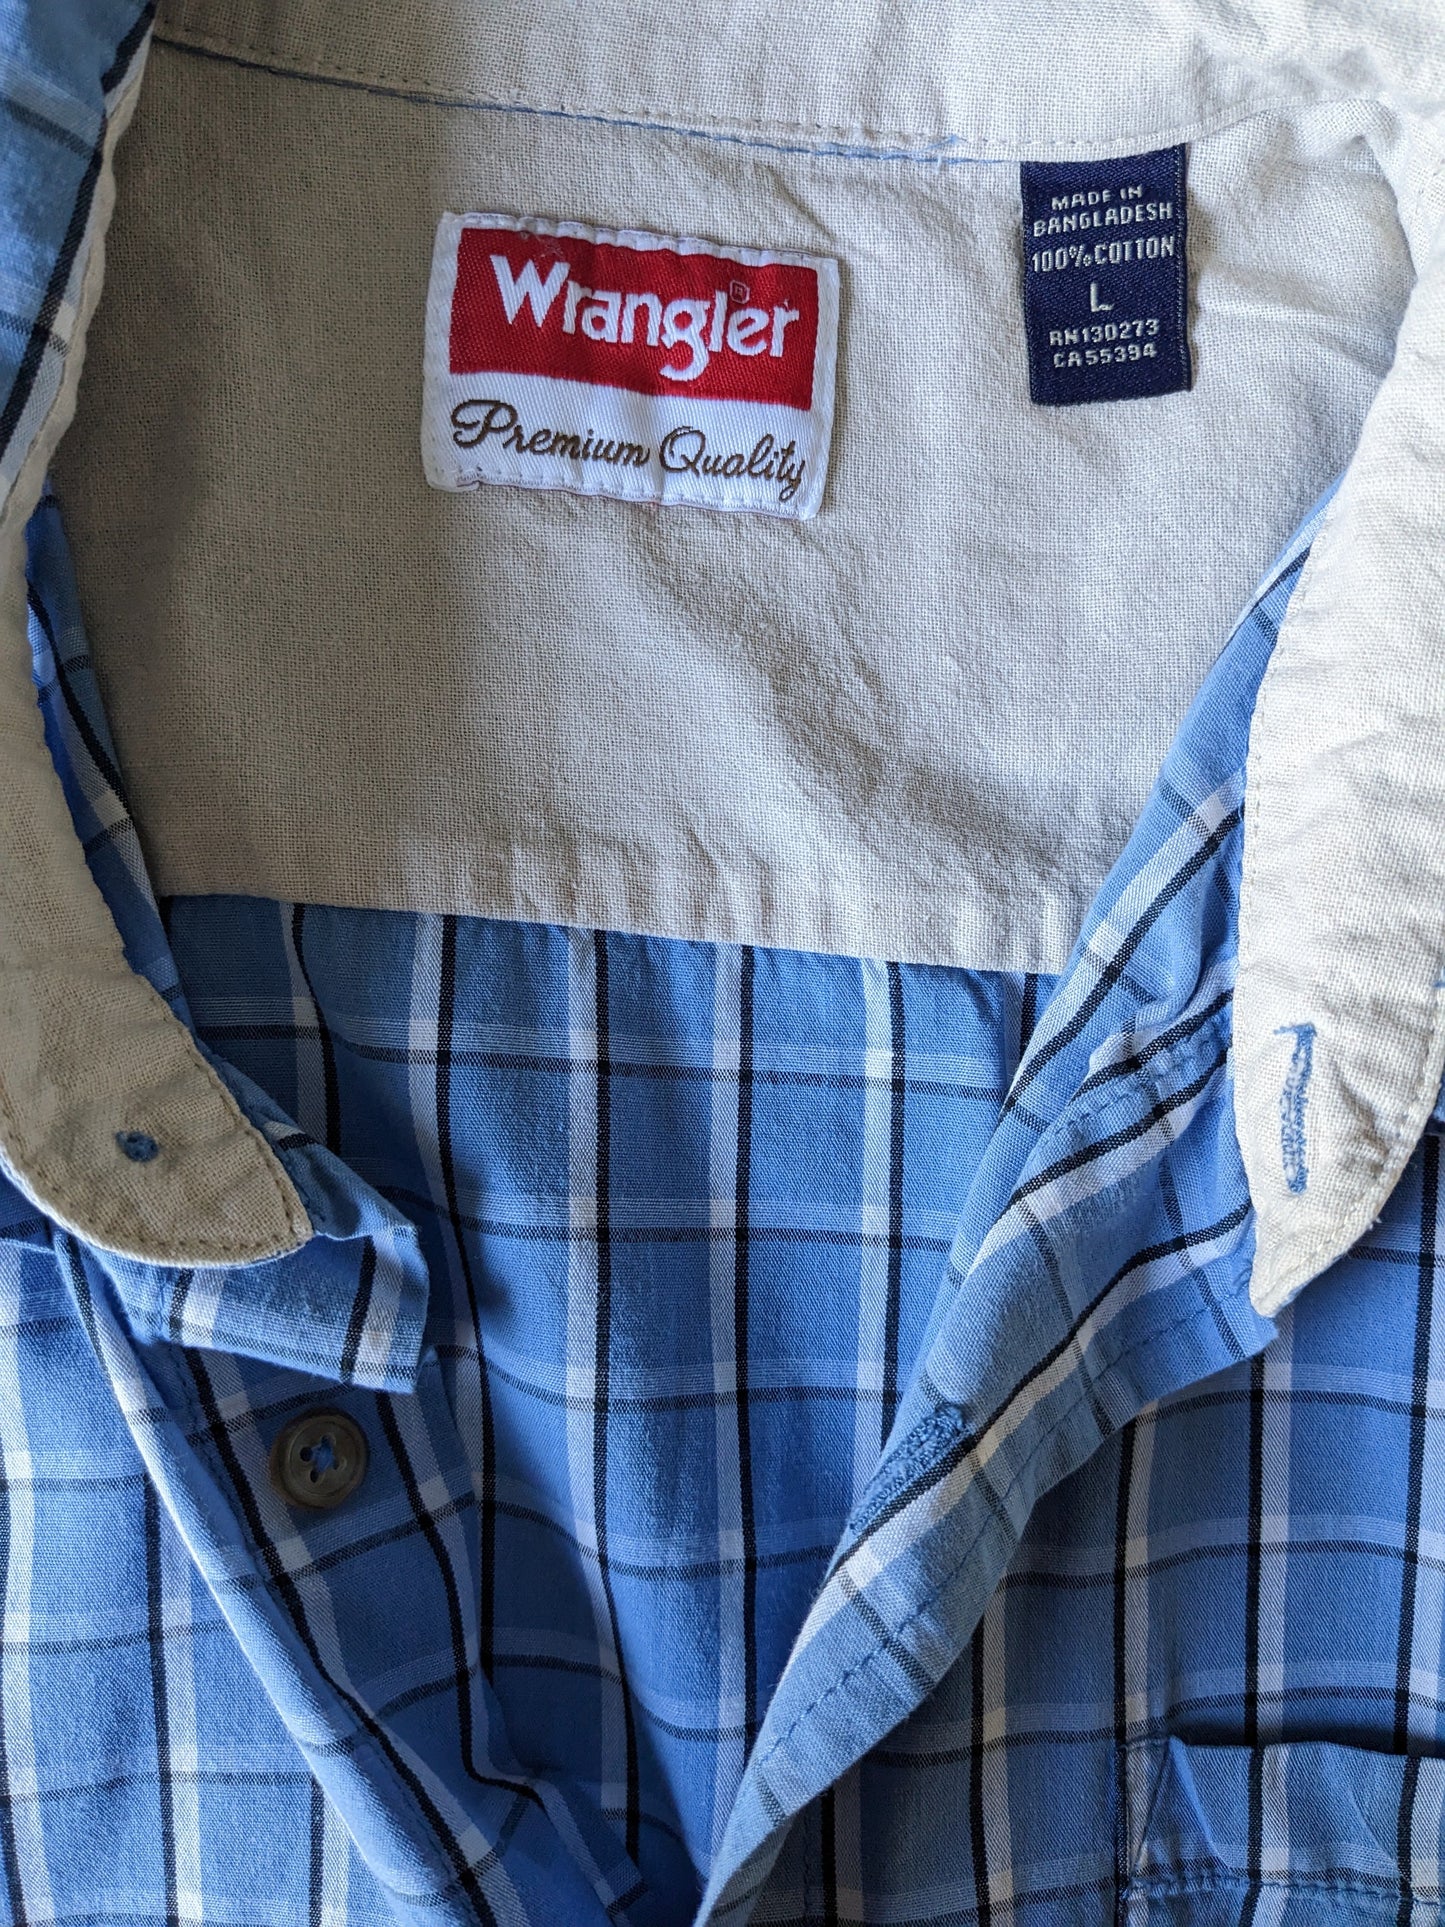 Wrangler overhemd korte mouw. Blauw Wit Zwart geruit. Maat L / XL.